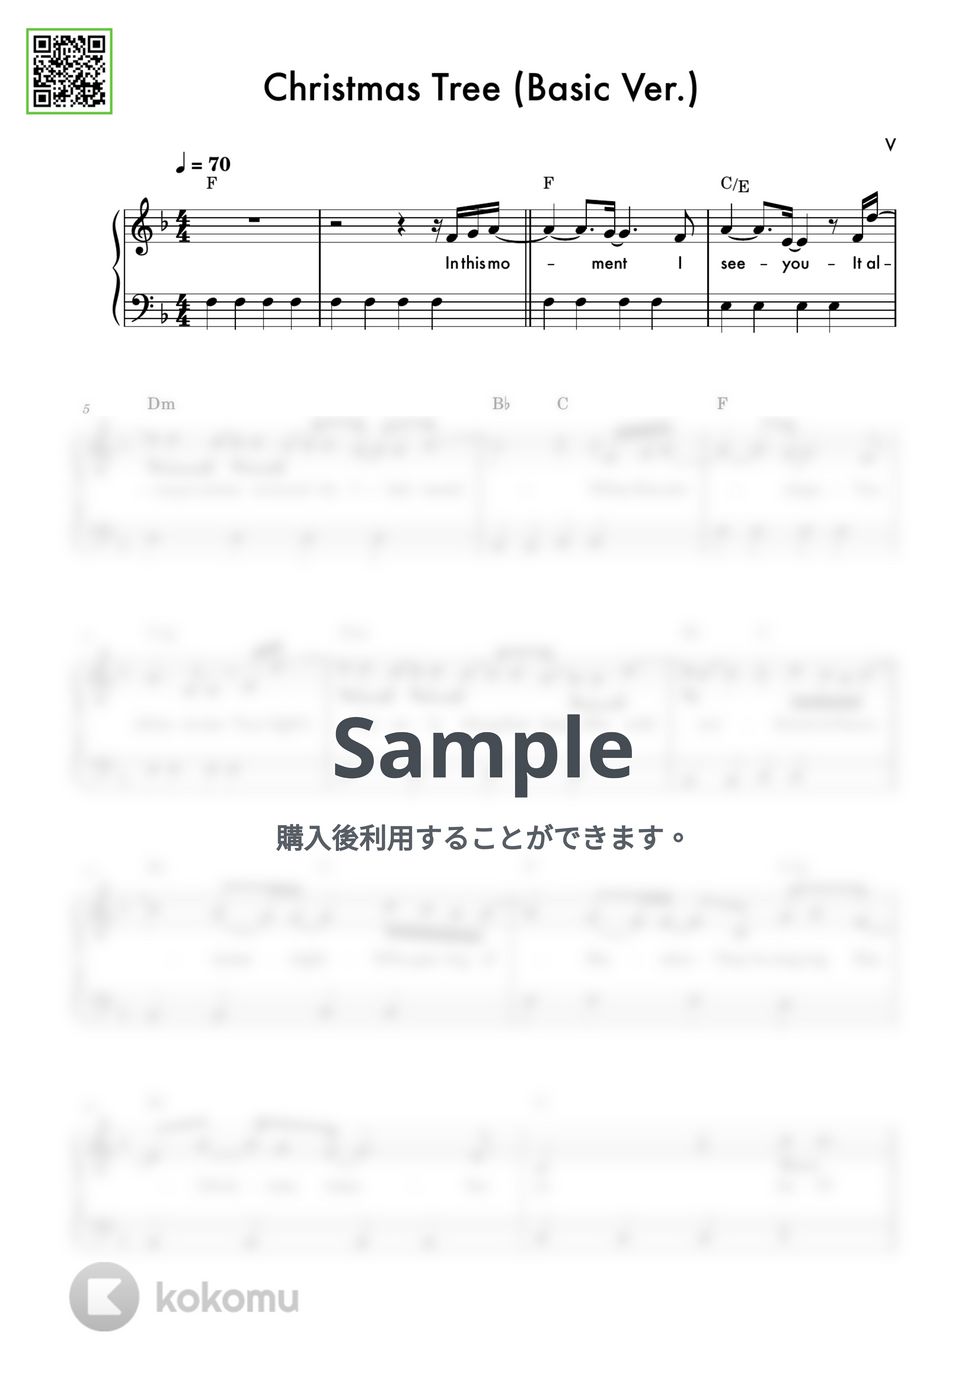 V(防弾少年団) - Christmas Tree (その年、私たちは OST / 初級バージョン) by DEUTDAMUSIC